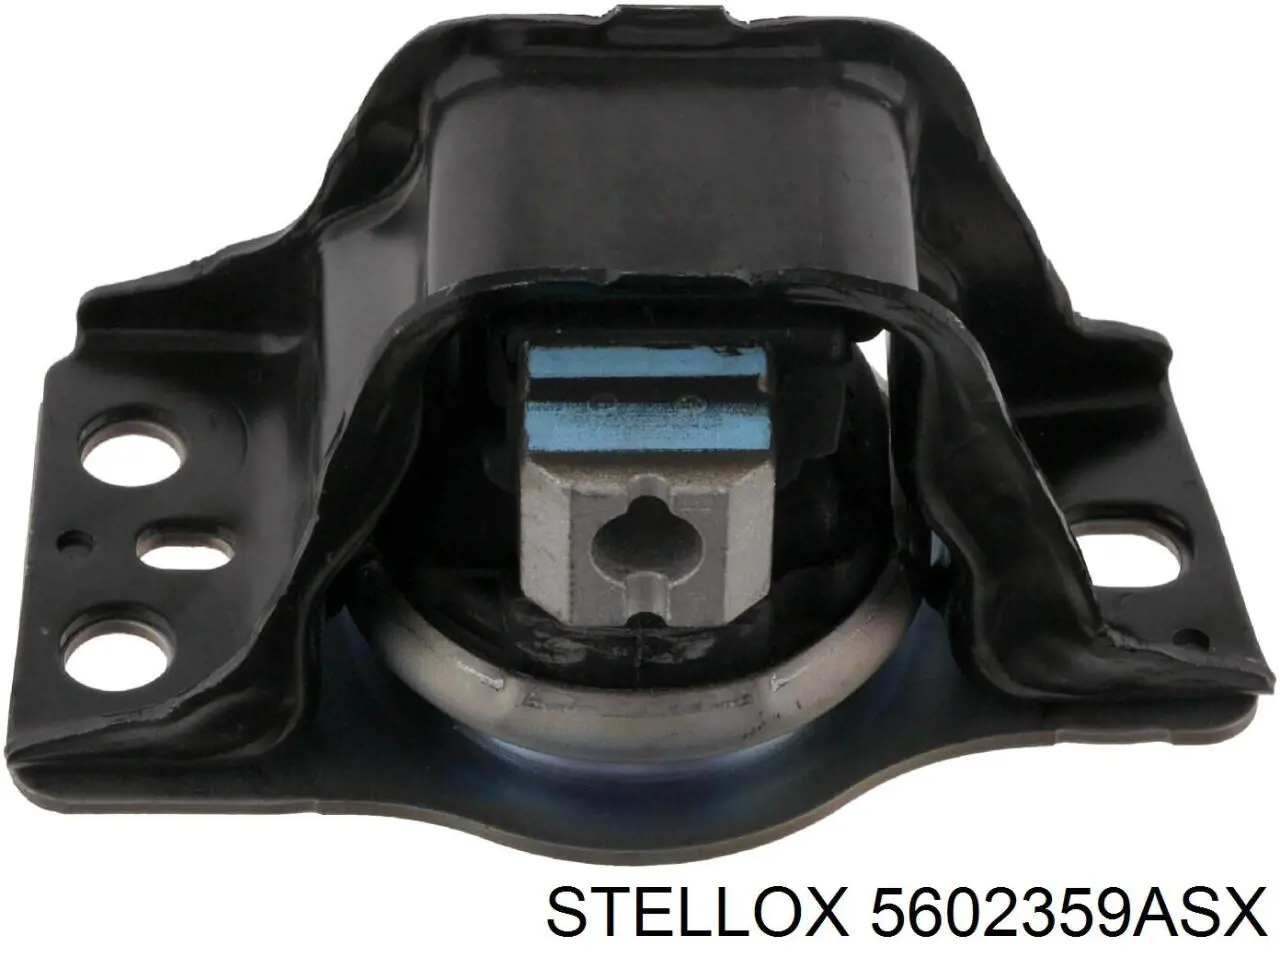 5602359ASX Stellox soporte de barra estabilizadora trasera